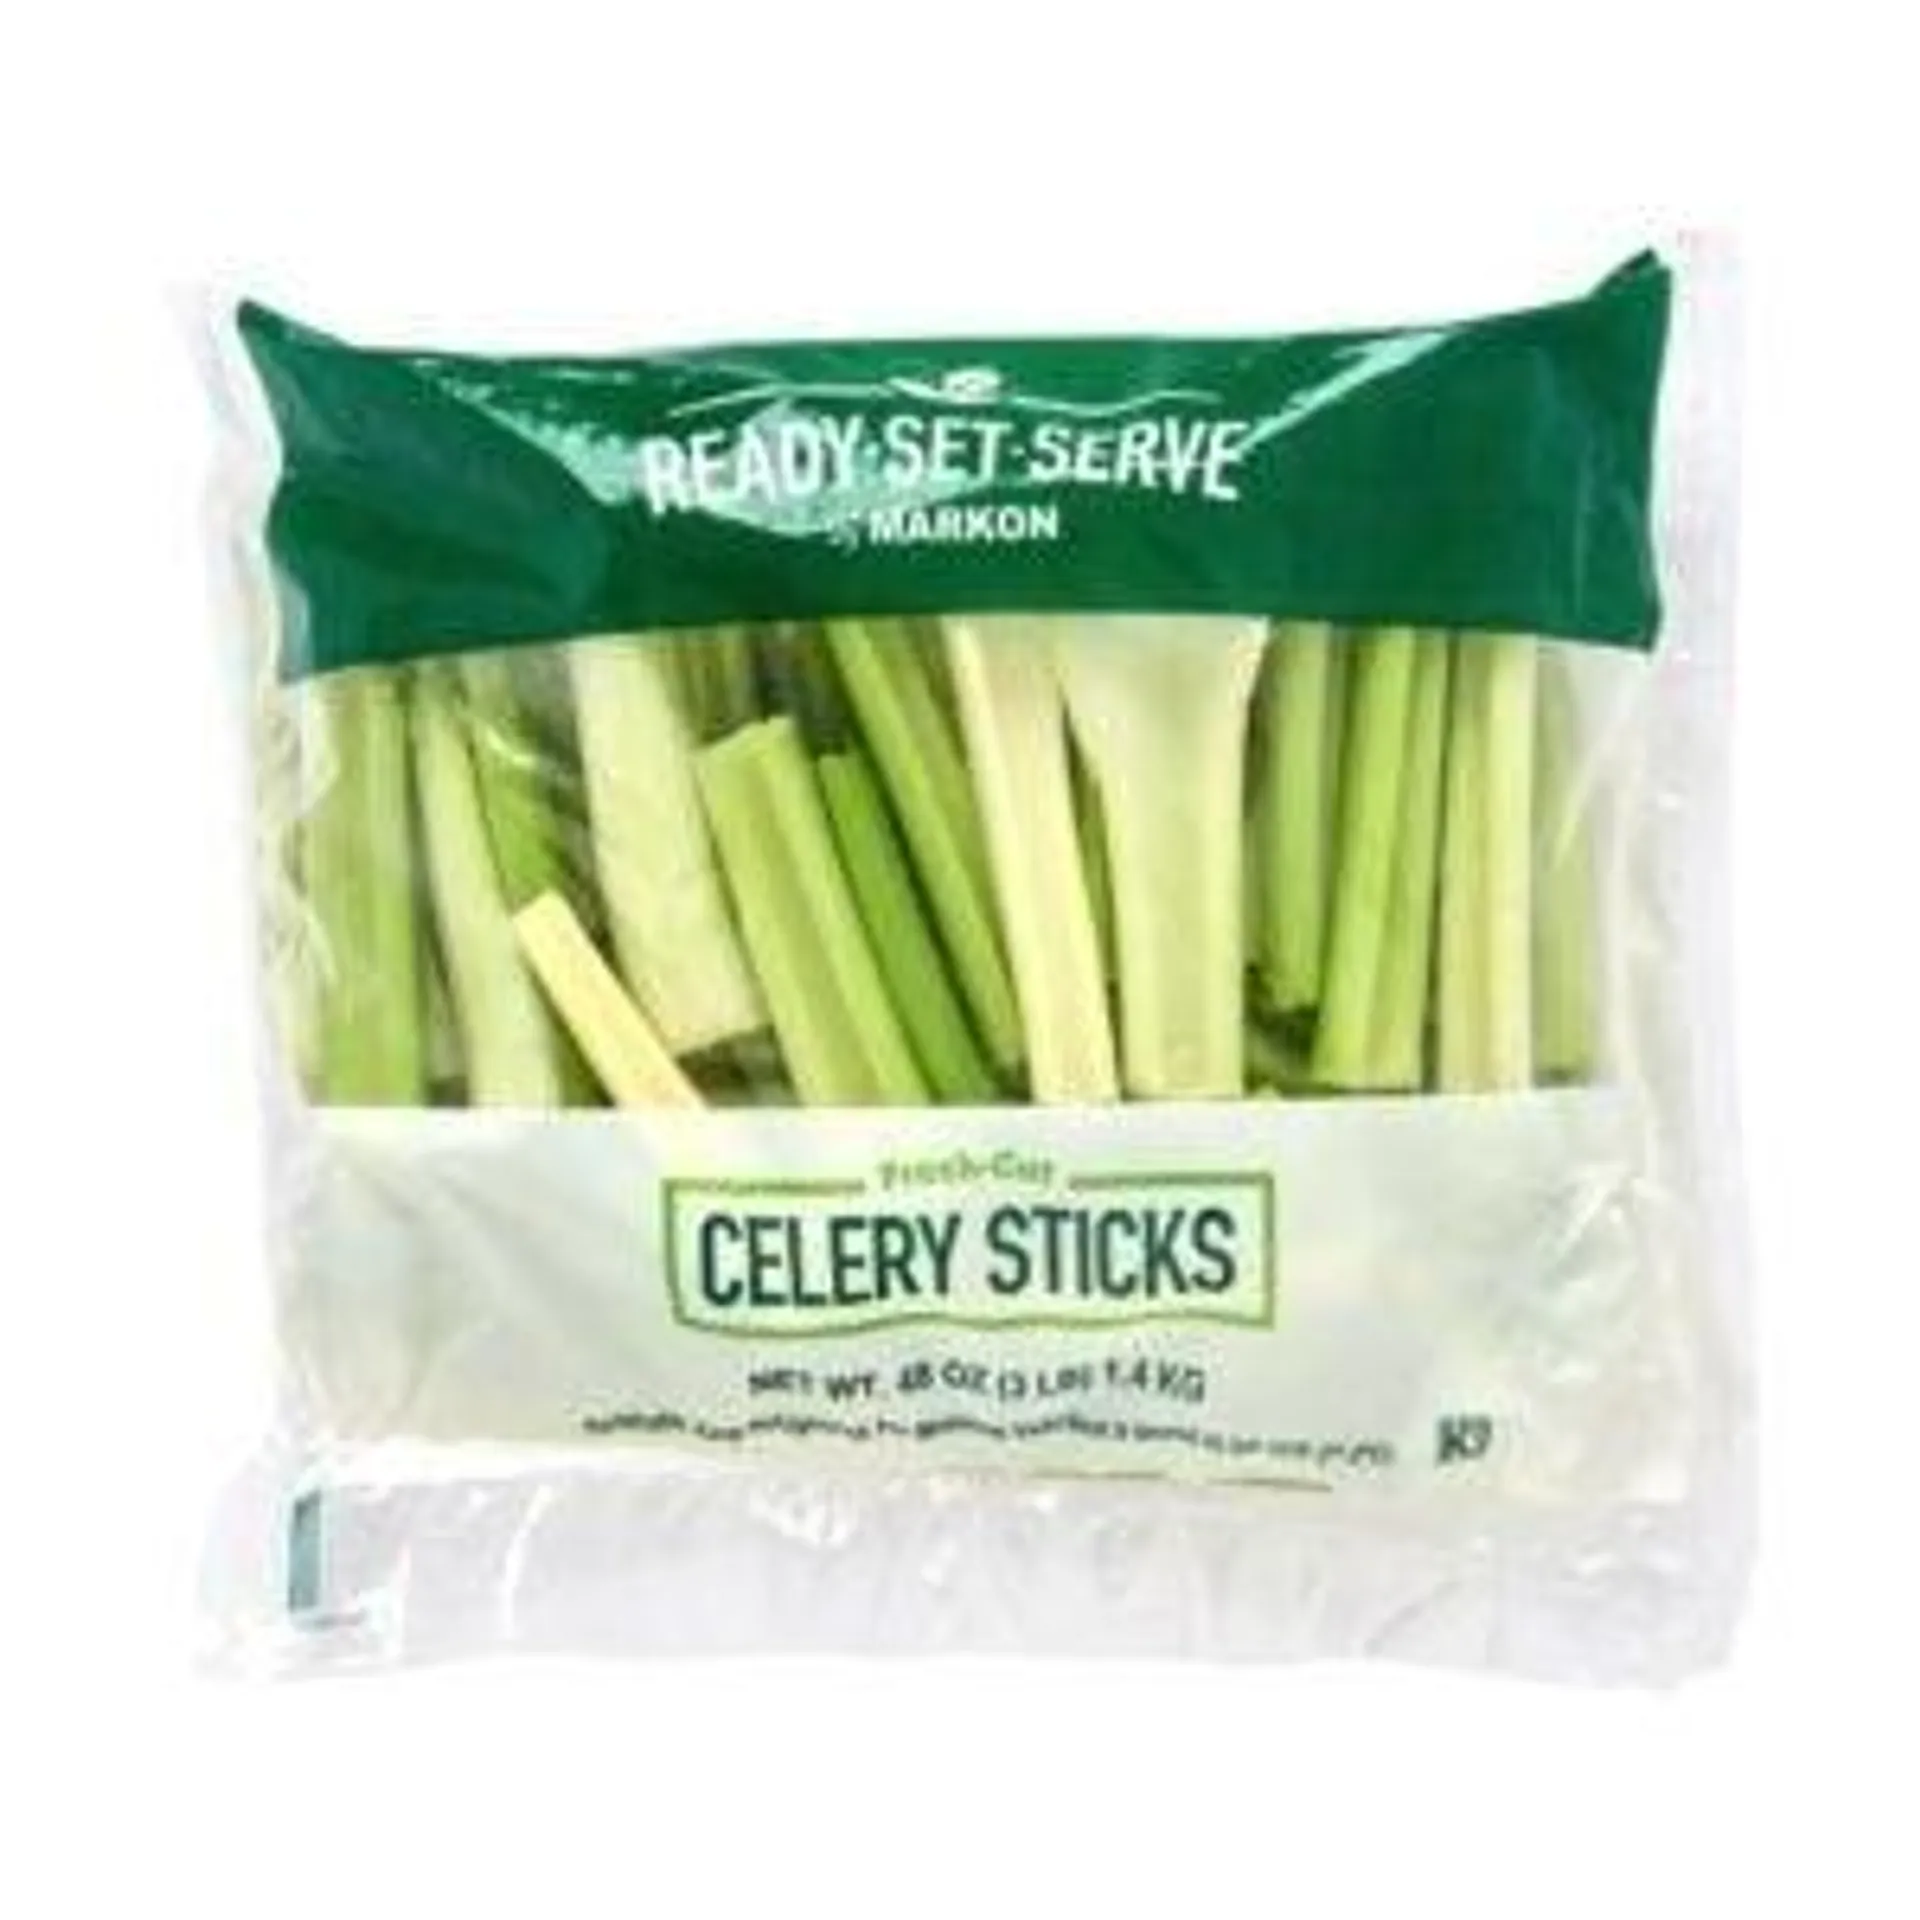 Ready-Set-Serve Celery Sticks